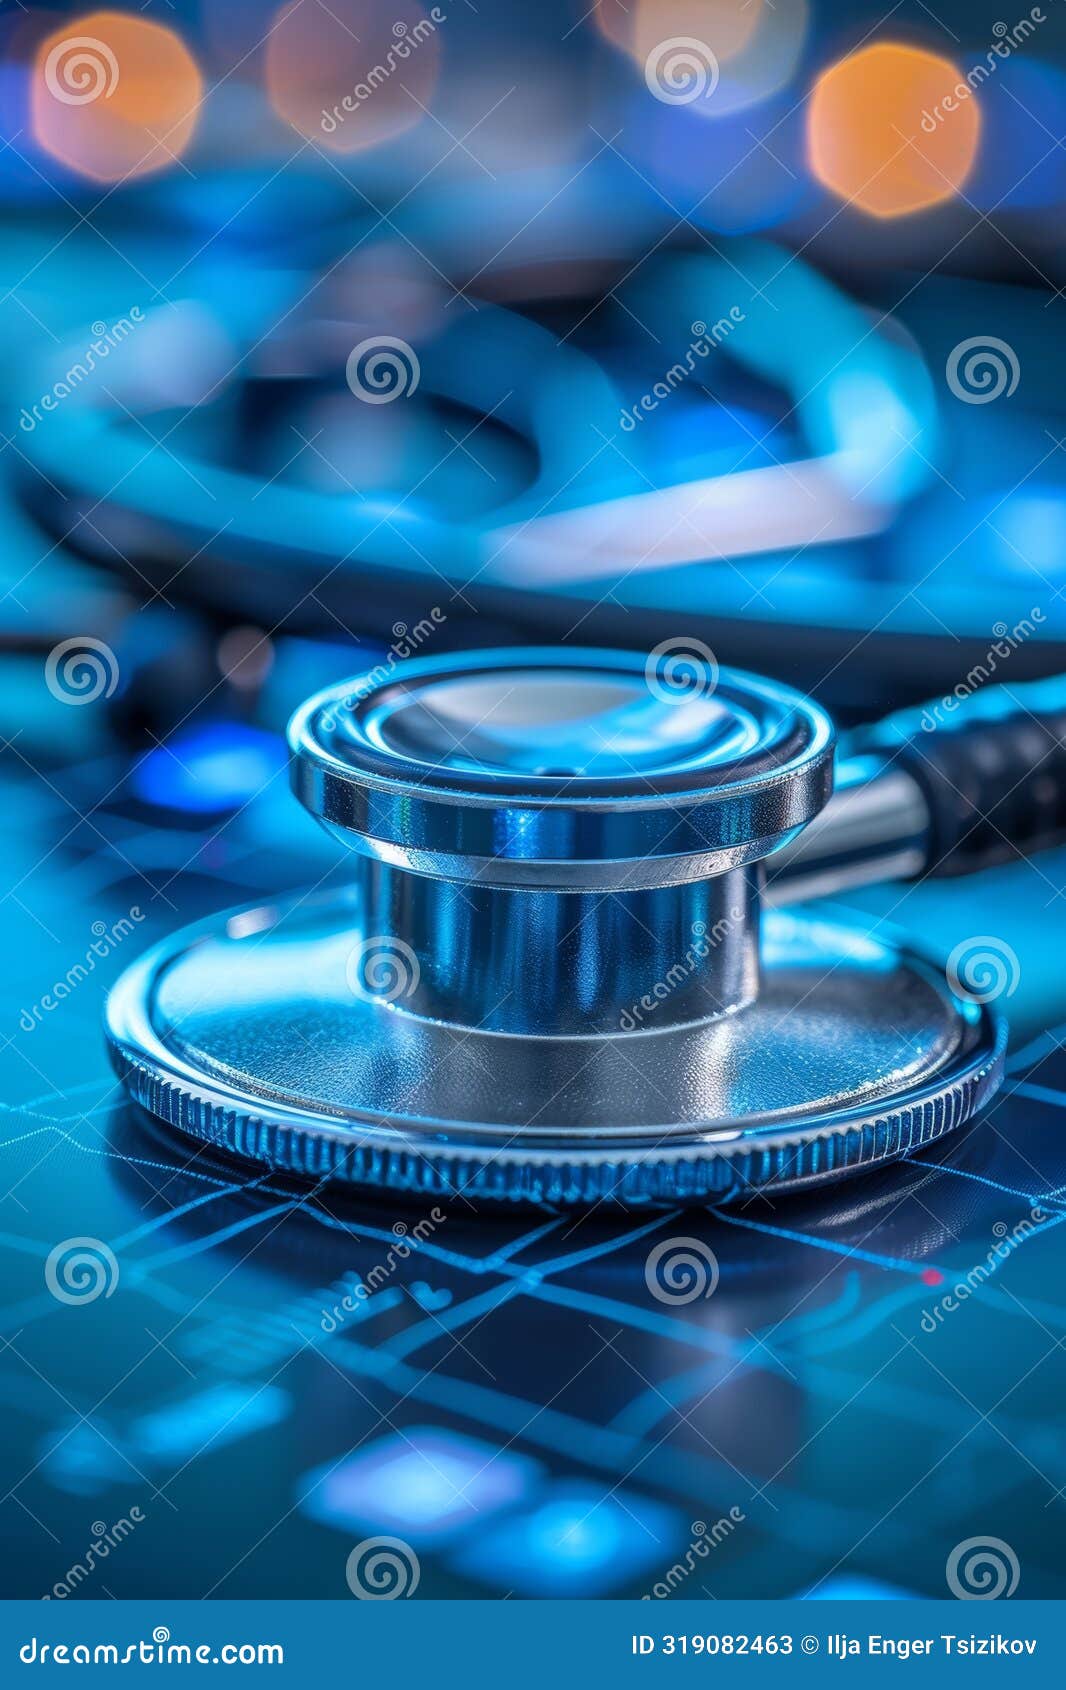 utilizing advanced technologies for remote healthcare provision in telemedicine field